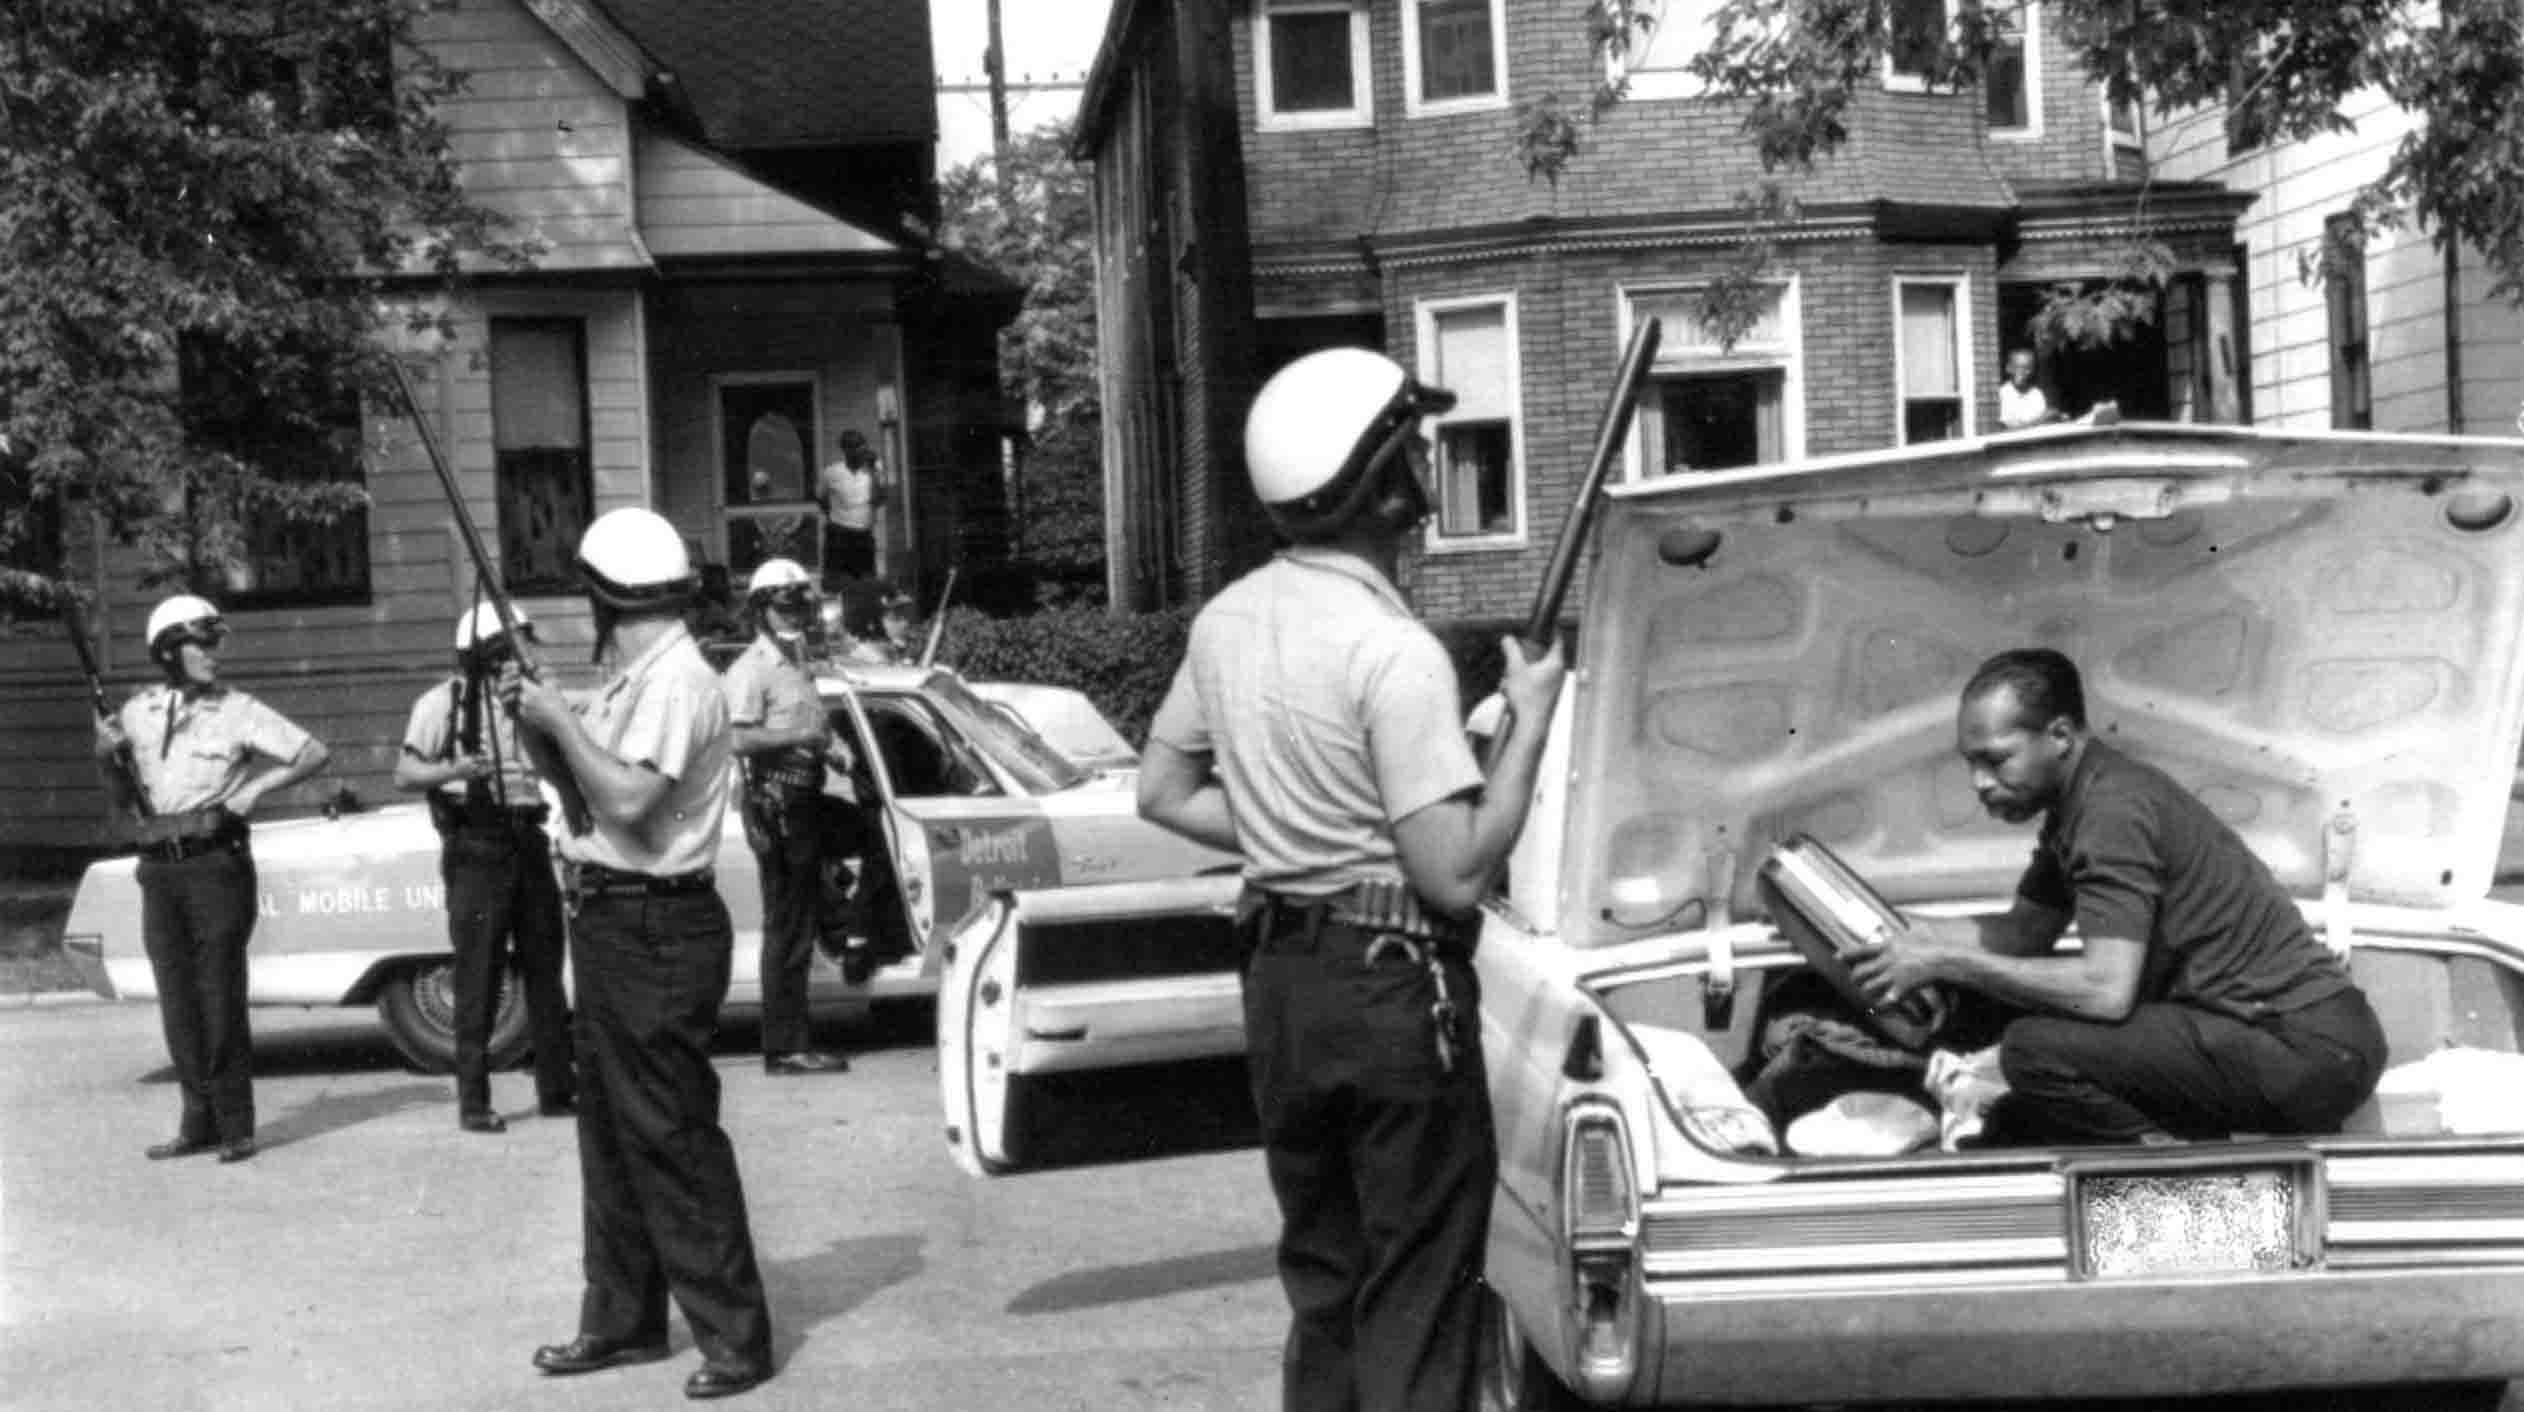 Tactical Mobile Unit; Detroit Police Department; 1960s